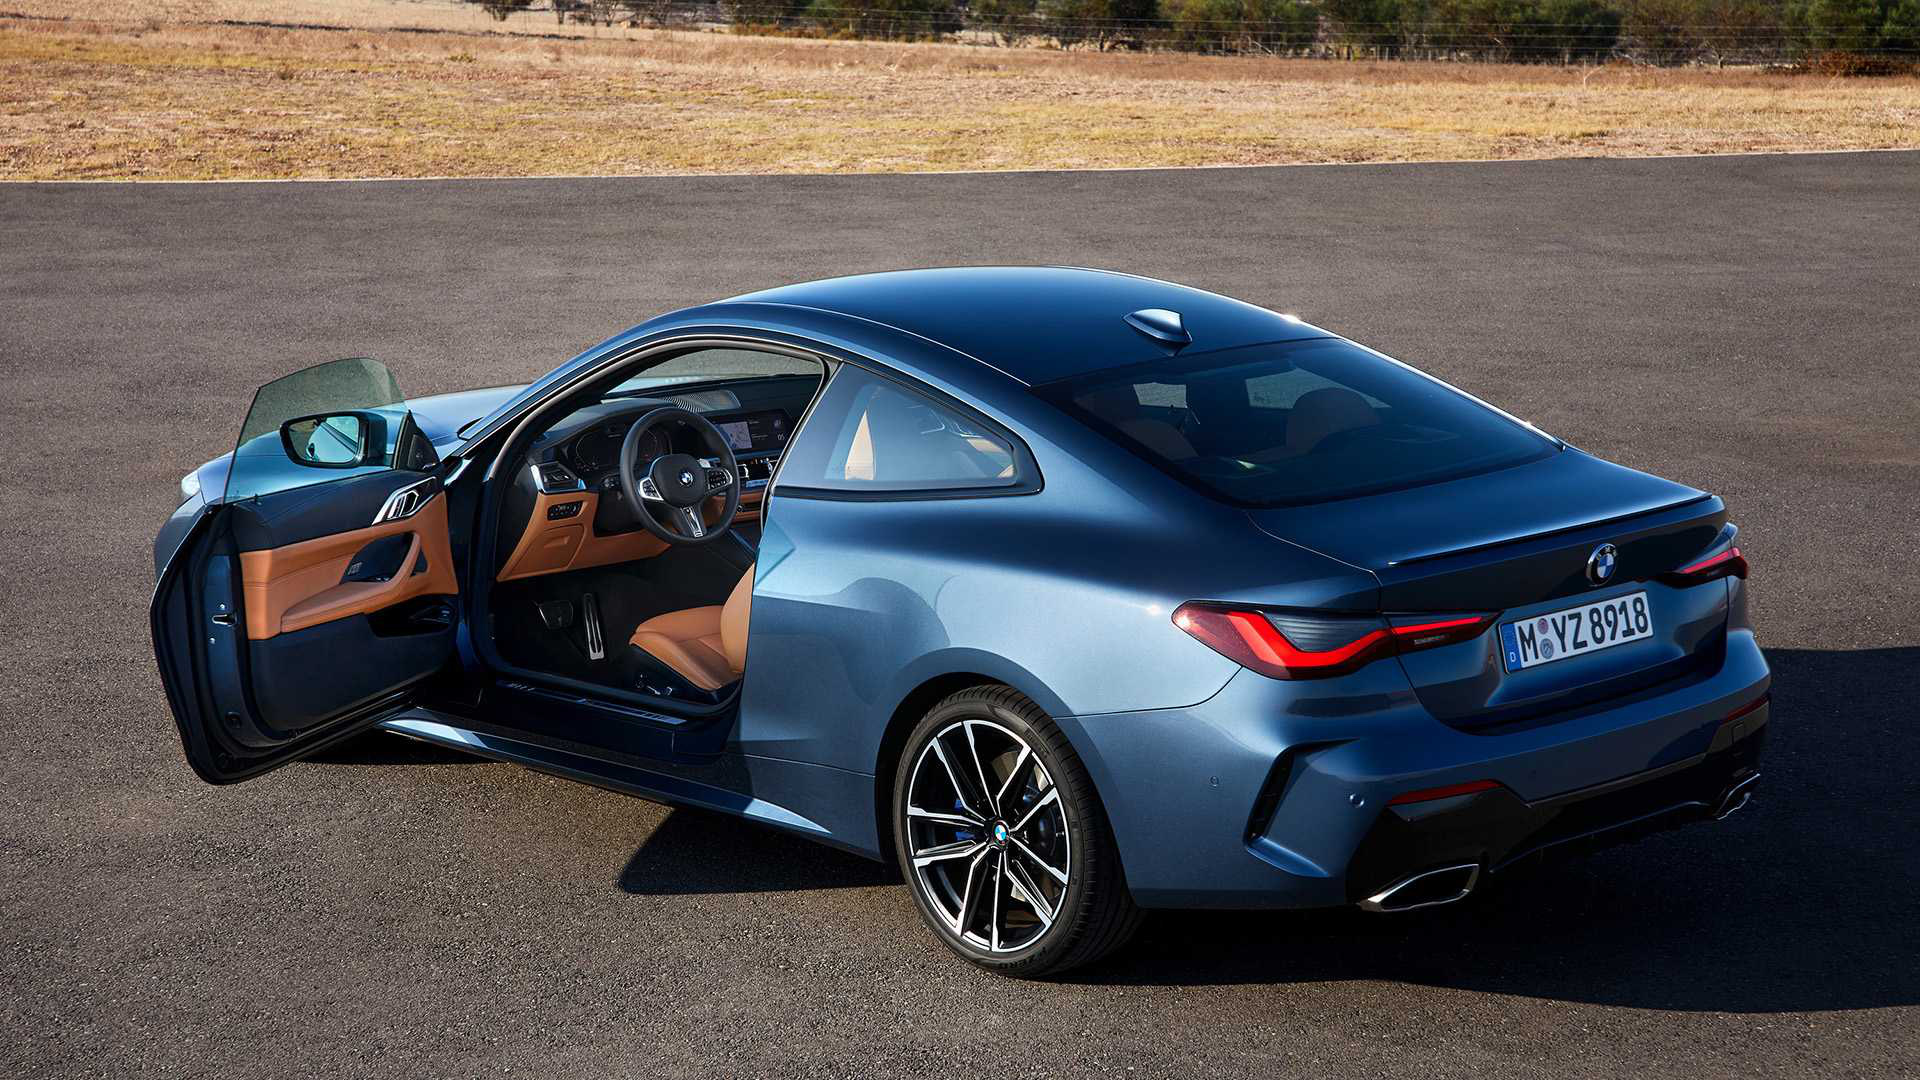 Ra mắt BMW 4-Series 2021: Tản nhiệt to chưa từng thấy, thiết kế đẹp ngang concept - Ảnh 6.